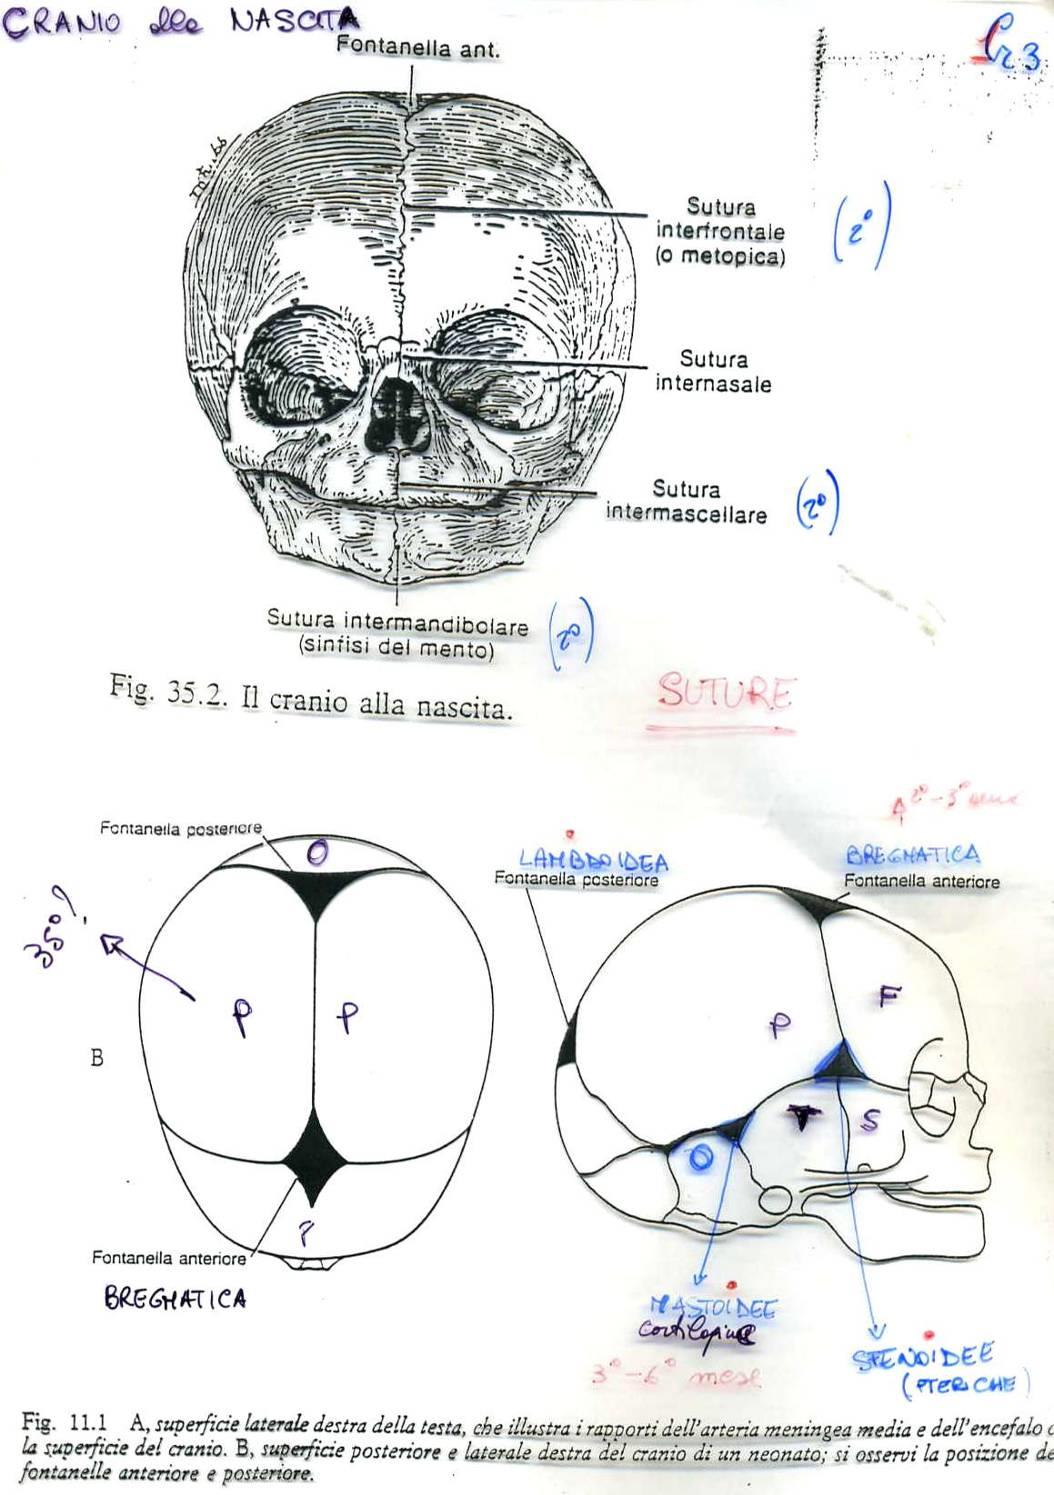 Cranio alla nascita dai 2 anni si fondono: mandibolari (sinfisi mentale) e frontali Le fontanelle si saldano entro il I III?